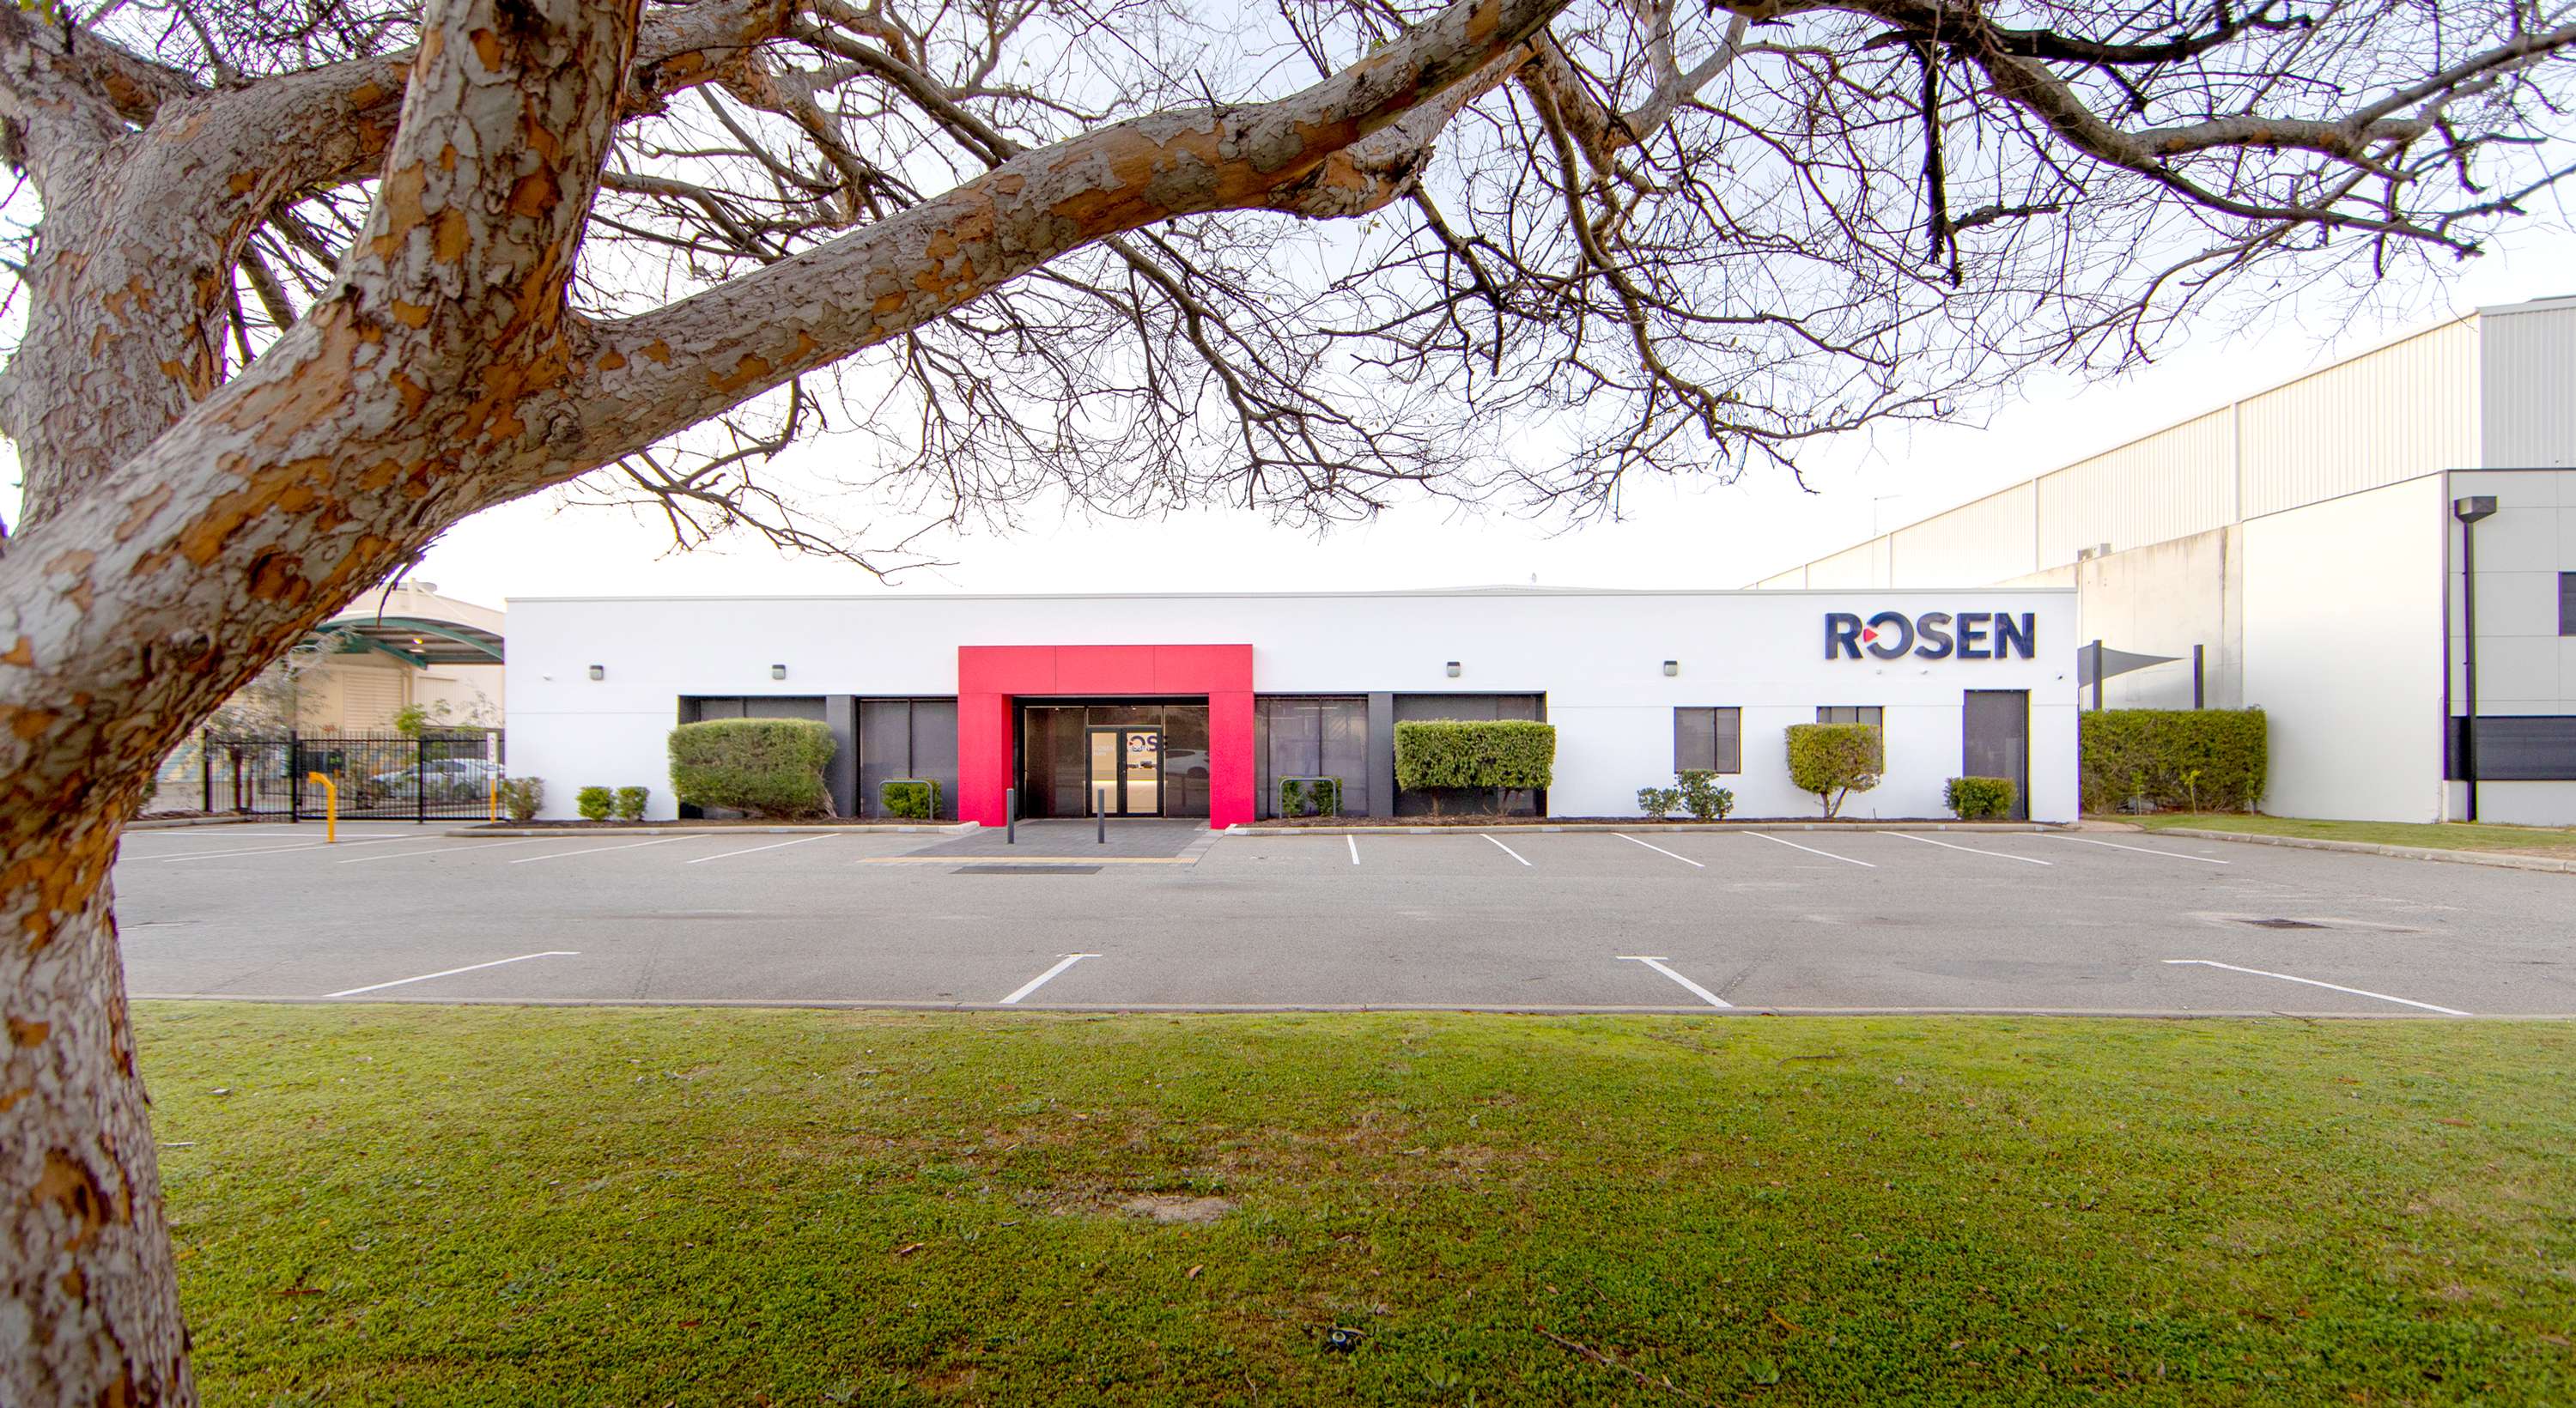 ROSEN location in Perth, Australia.